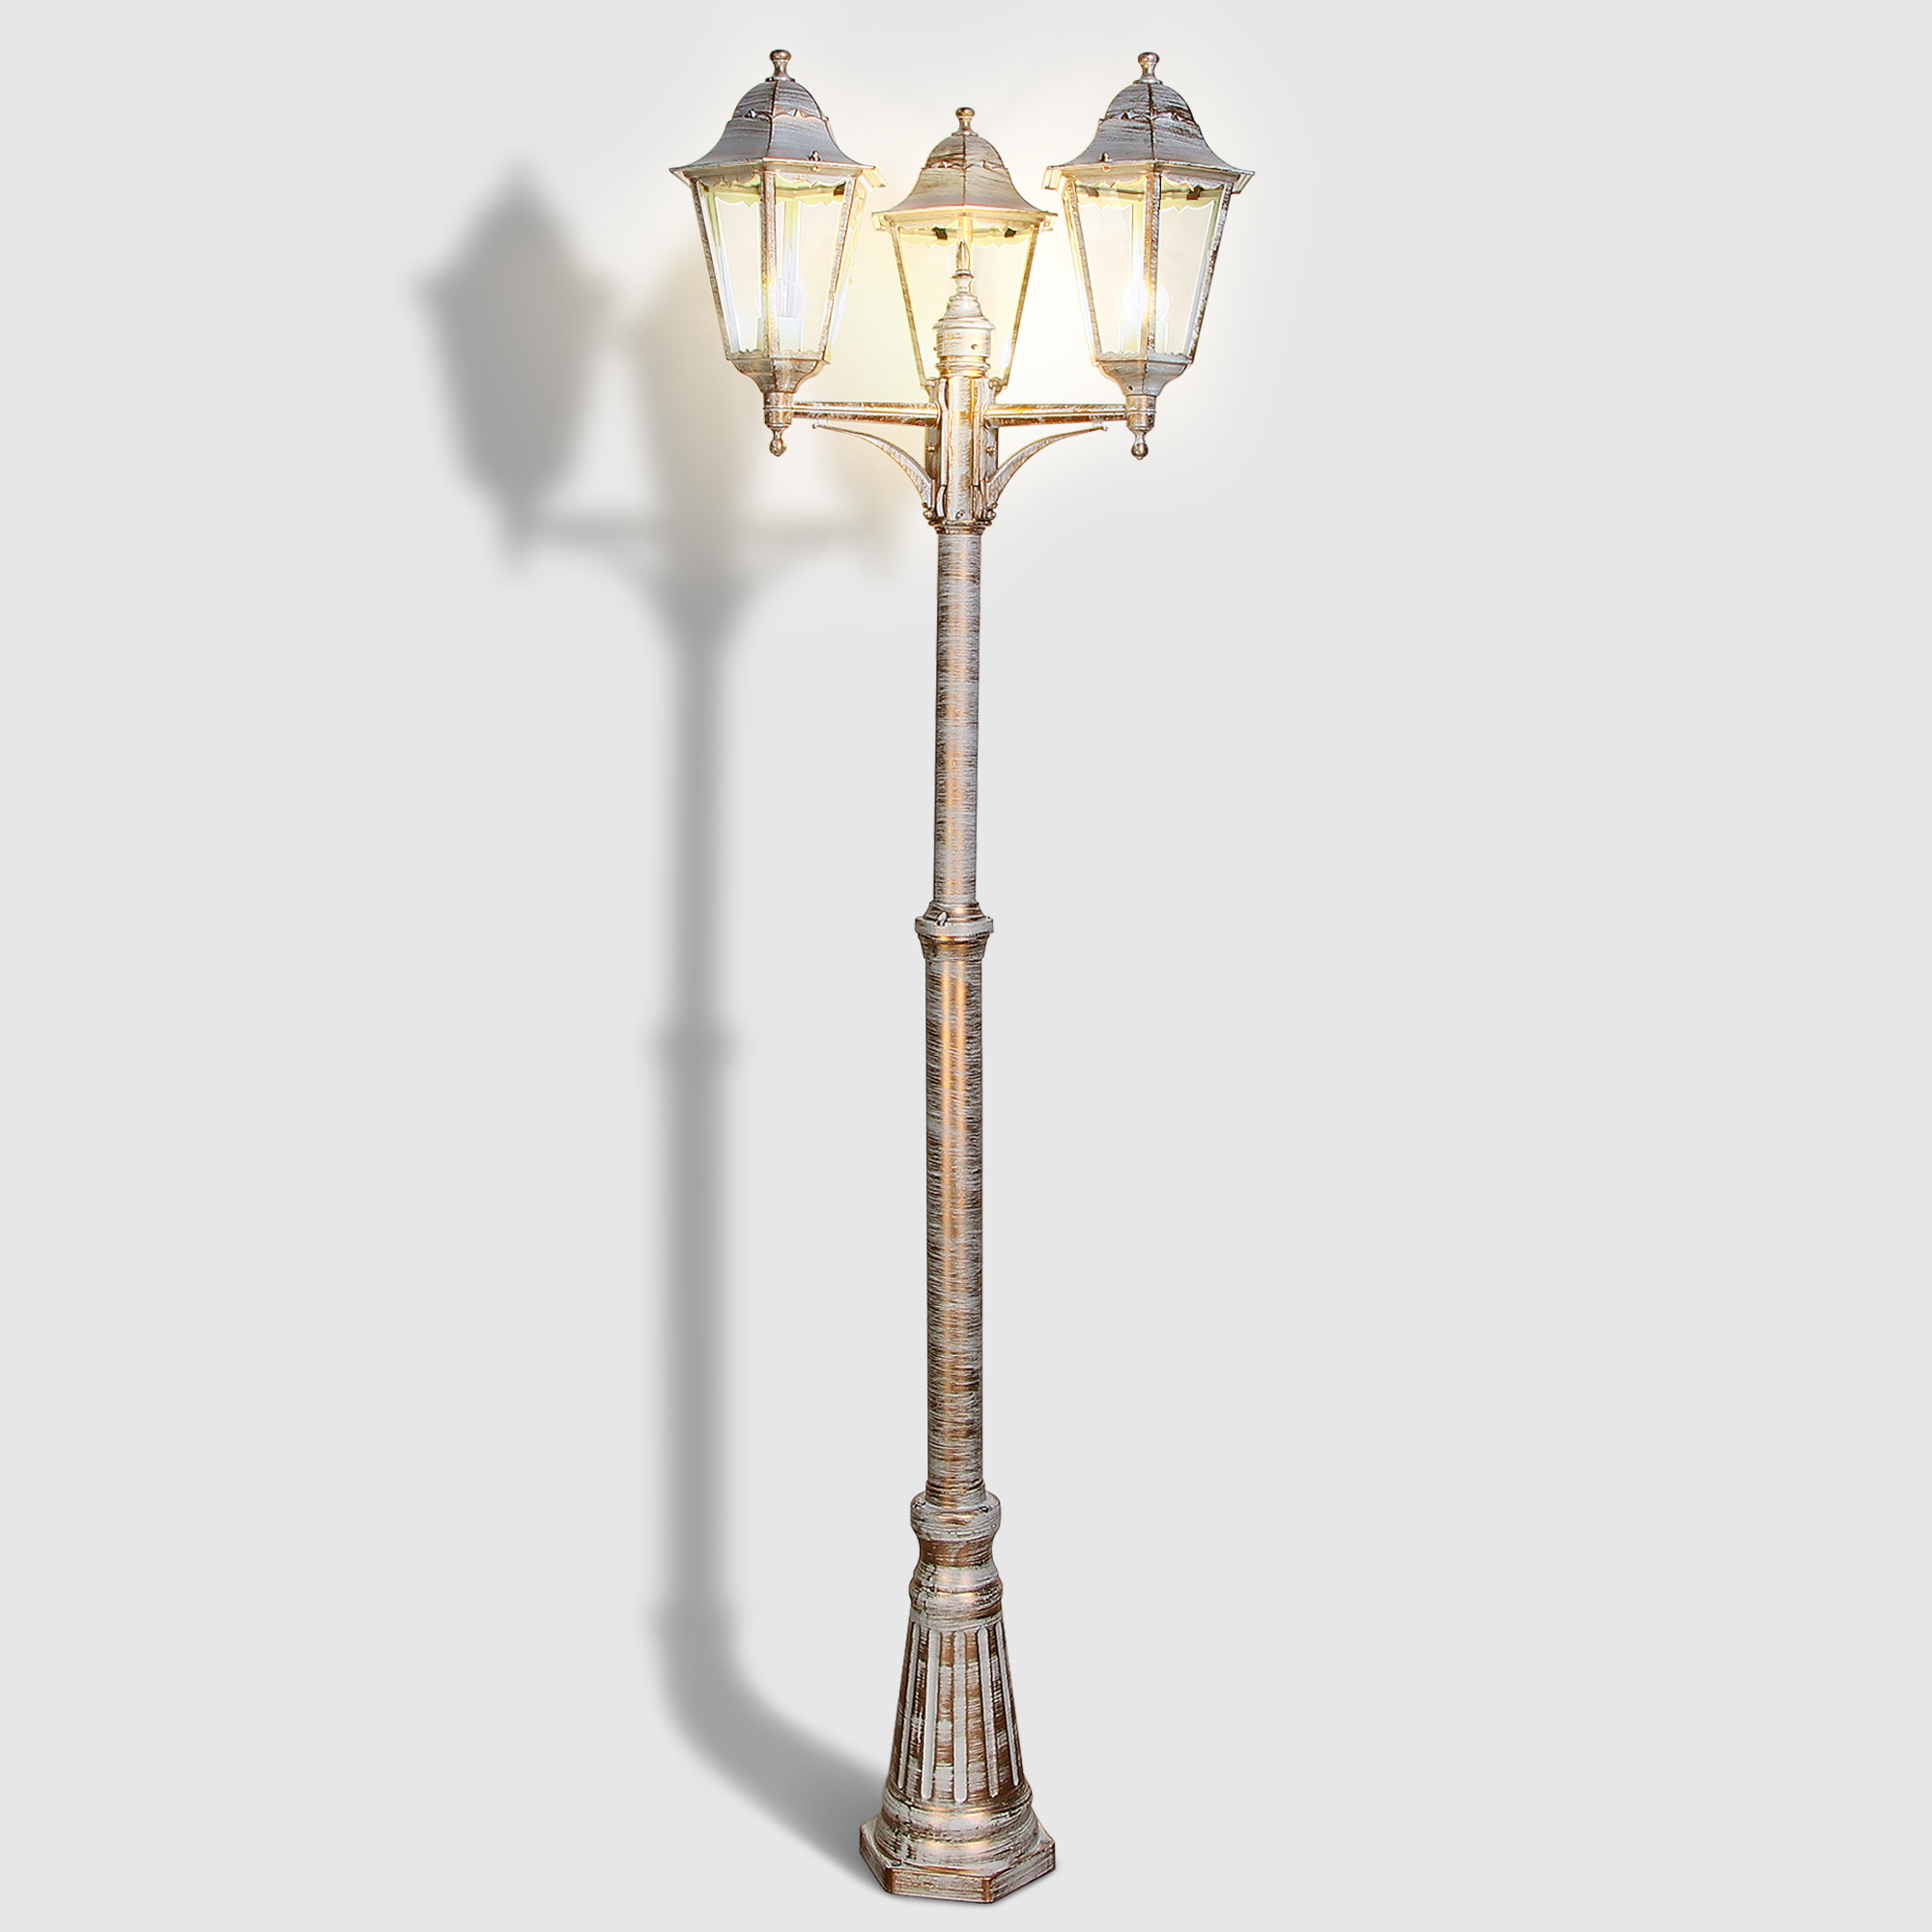 Светильник садовый Amber Lamp 9003A напольный IP44 E27 100Вт, белое золото, цвет белое золото, прозрачный - фото 2